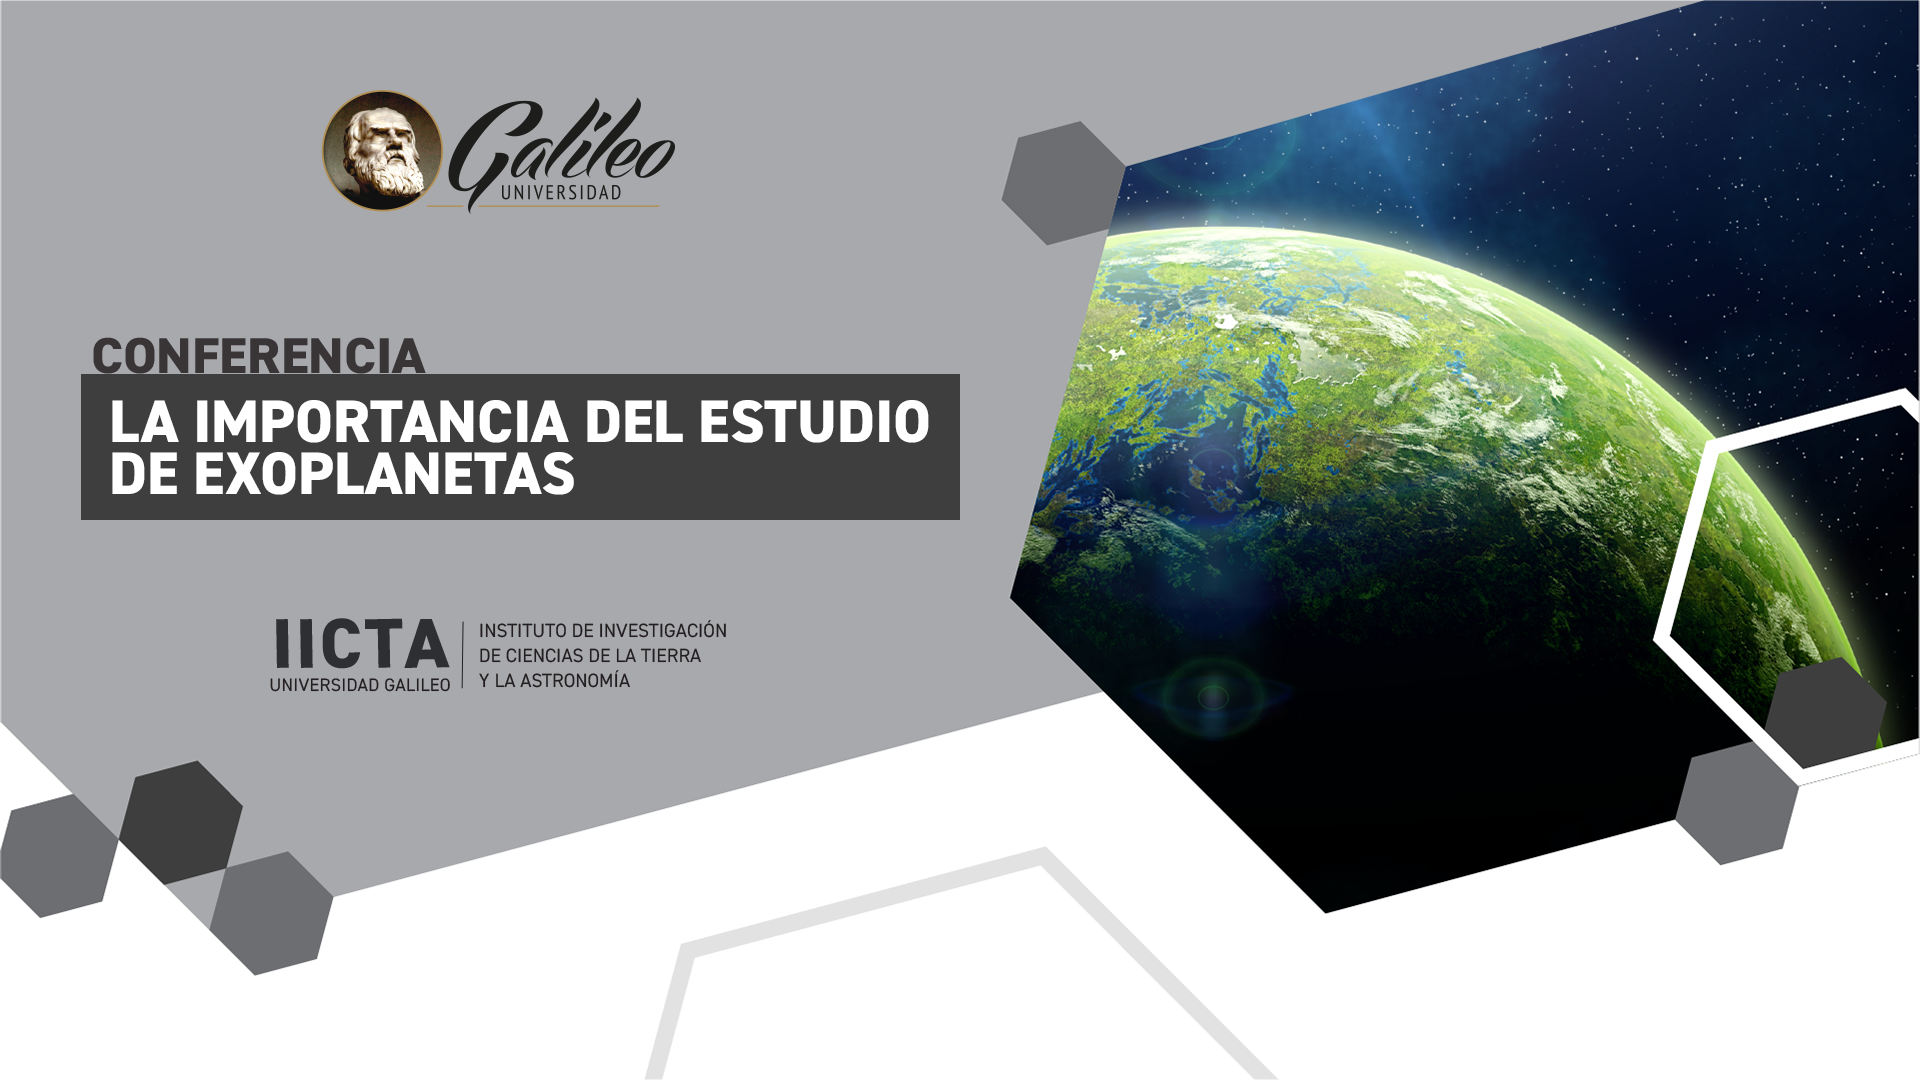 Conferencia  “Conferencia “La importancia del estudio de exoplanetas”